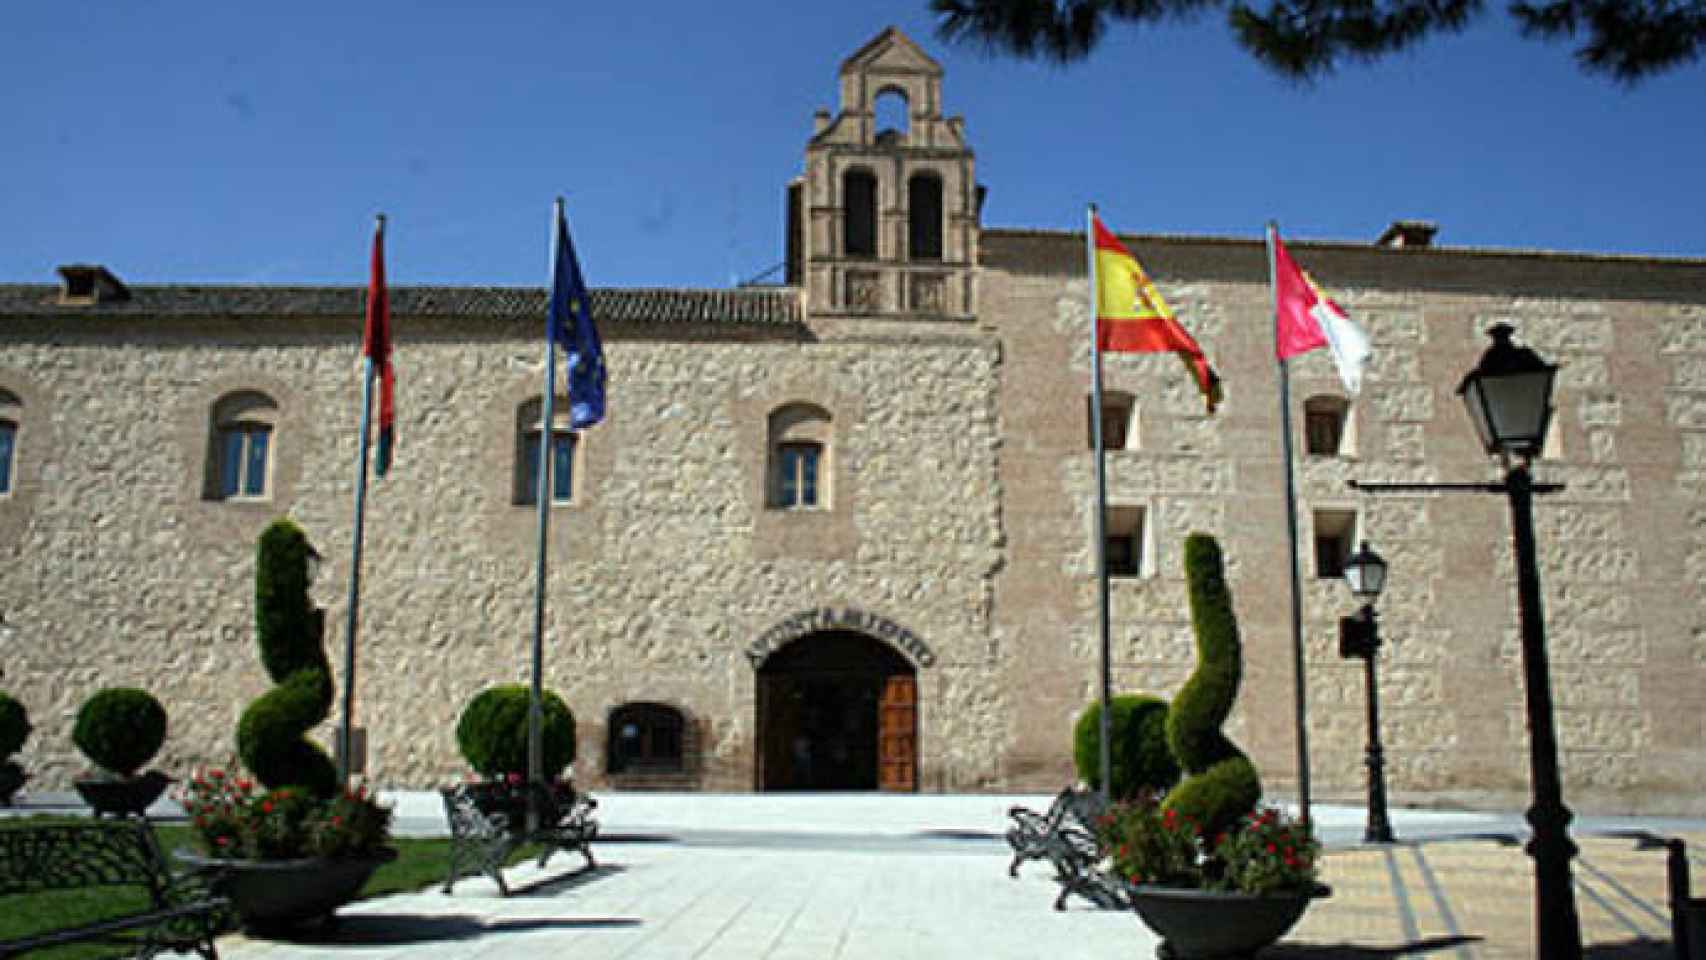 Ayuntamiento de Torrijos